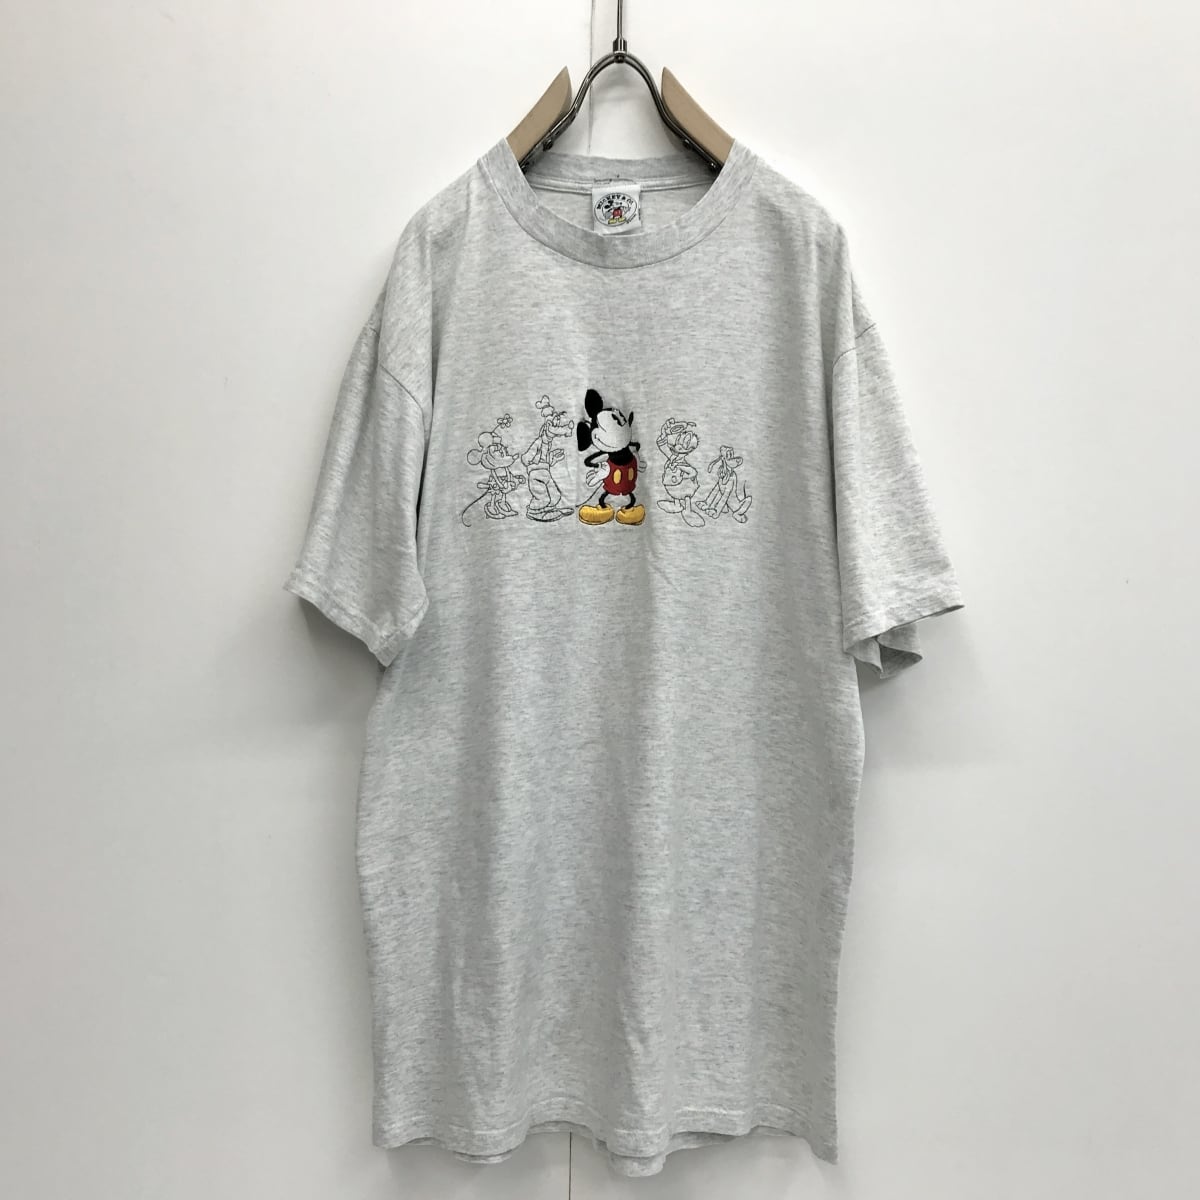 【Disney】ミッキー トレーナー☆デニムパンツ☆スタジャン 3点セット 90